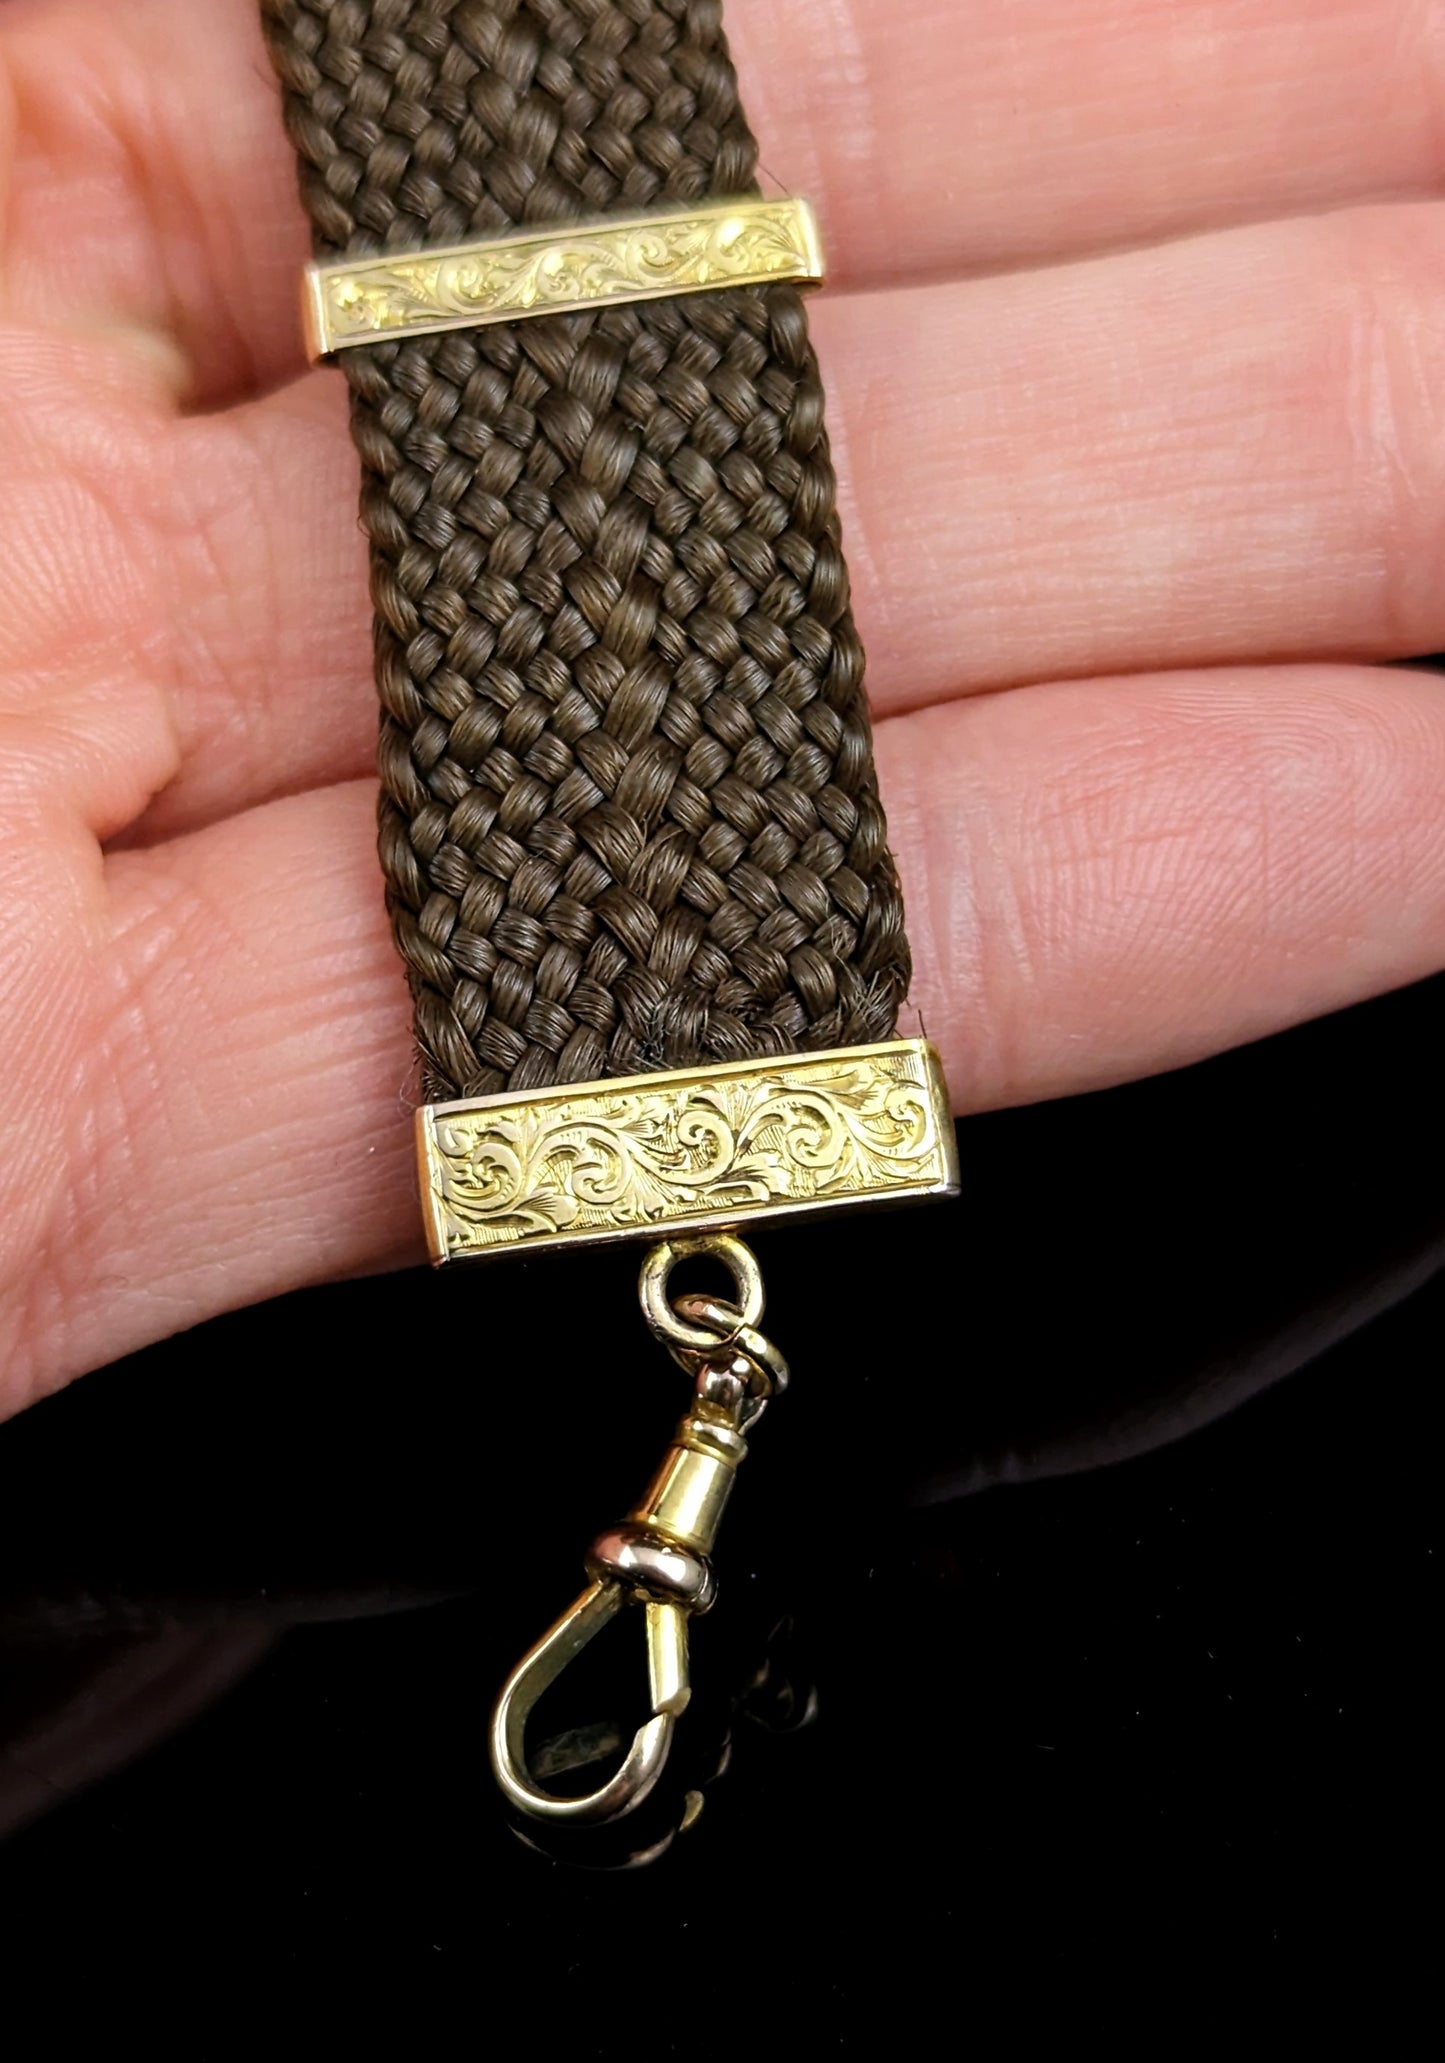 Antique Hairwork Watch fob chain, 9ct gold, Victorian